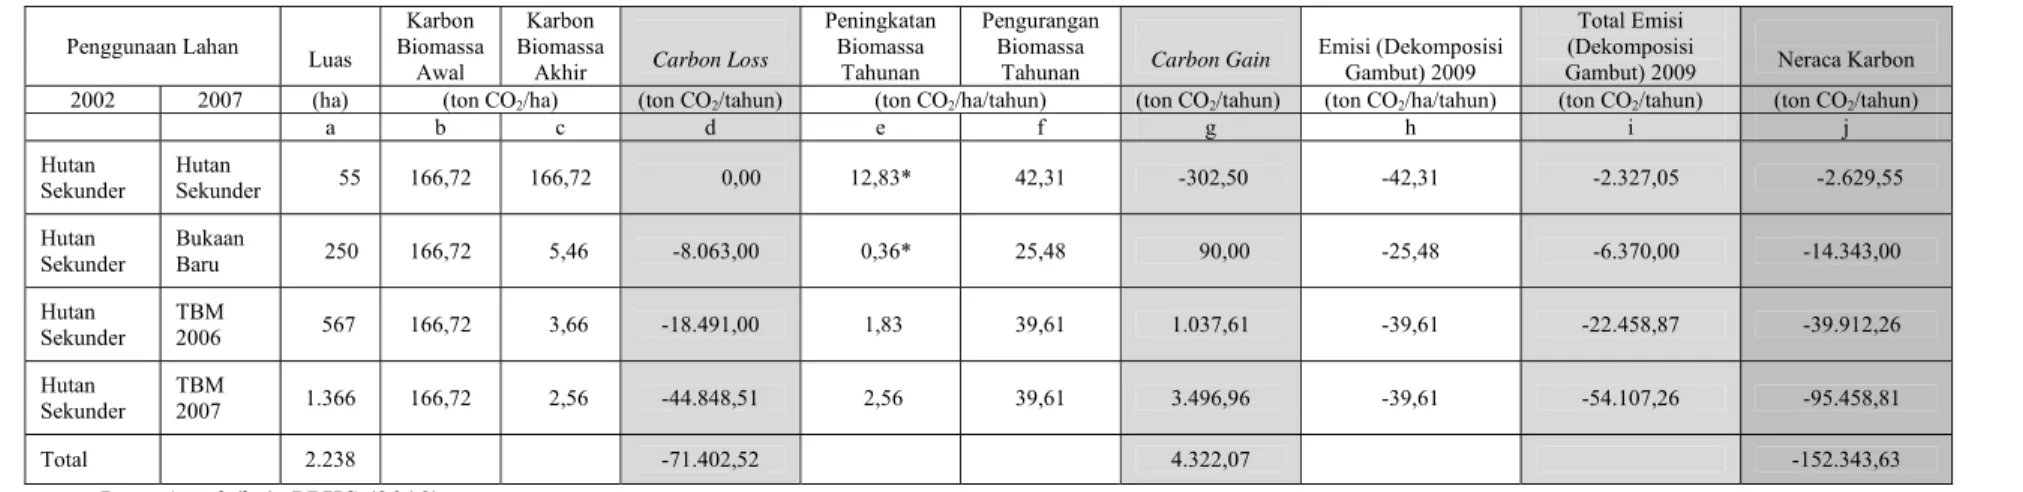 Tabel 8. Emisi Neto Karbon (CO 2 ) Kebun Panai Jaya Tahun 2009 